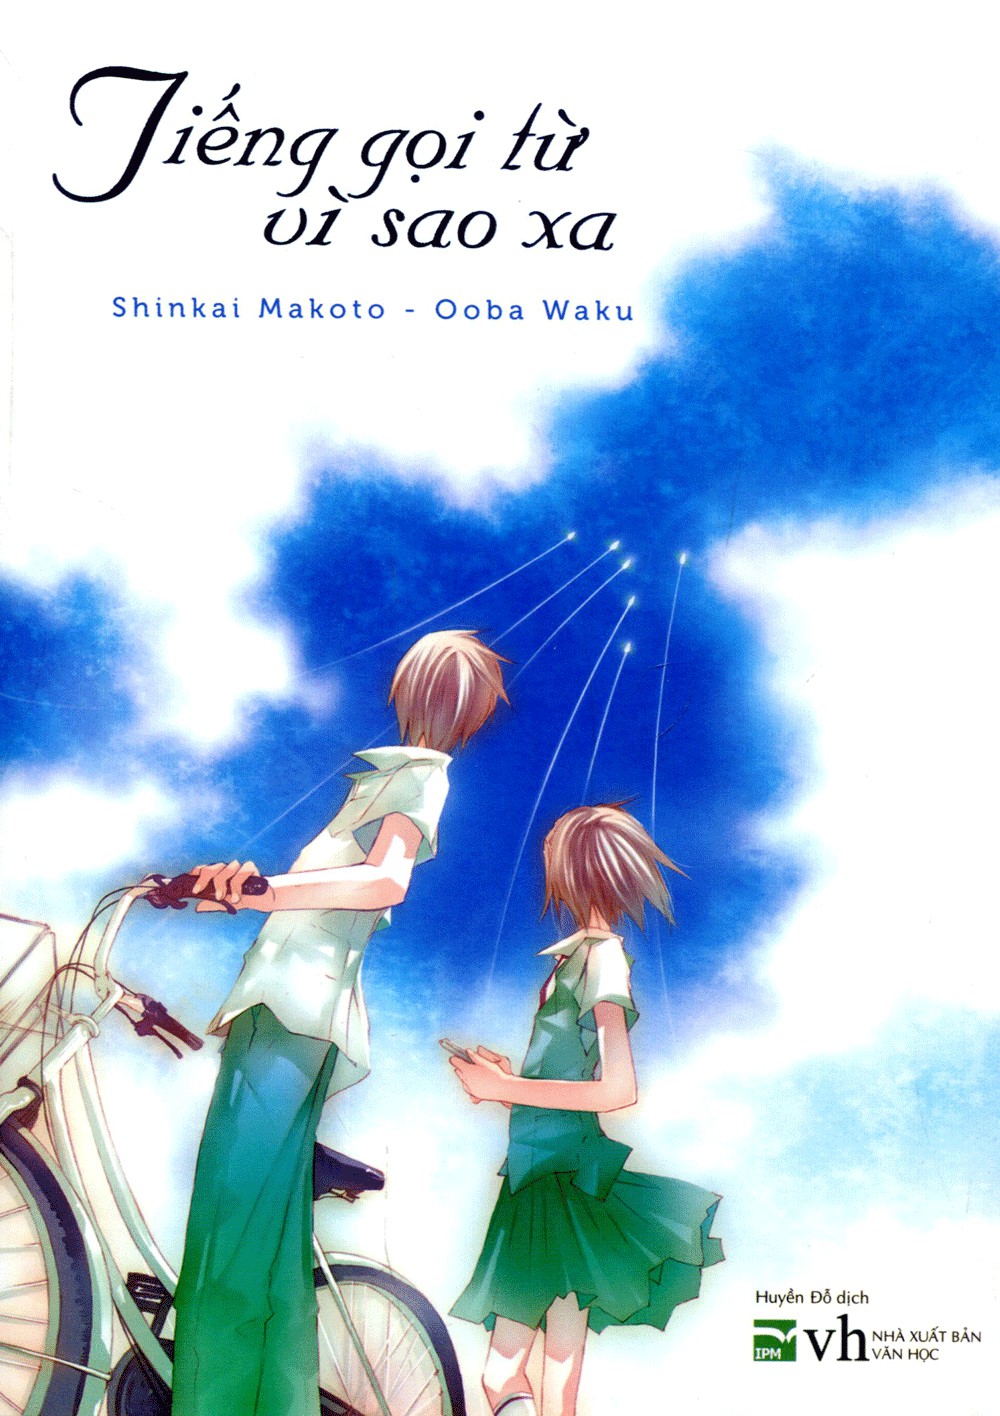 eBook Tiếng Gọi Từ Vì Sao Xa - Shinkai Makoto & Ooba Waku full prc pdf epub azw3 [Tiểu thuyết]